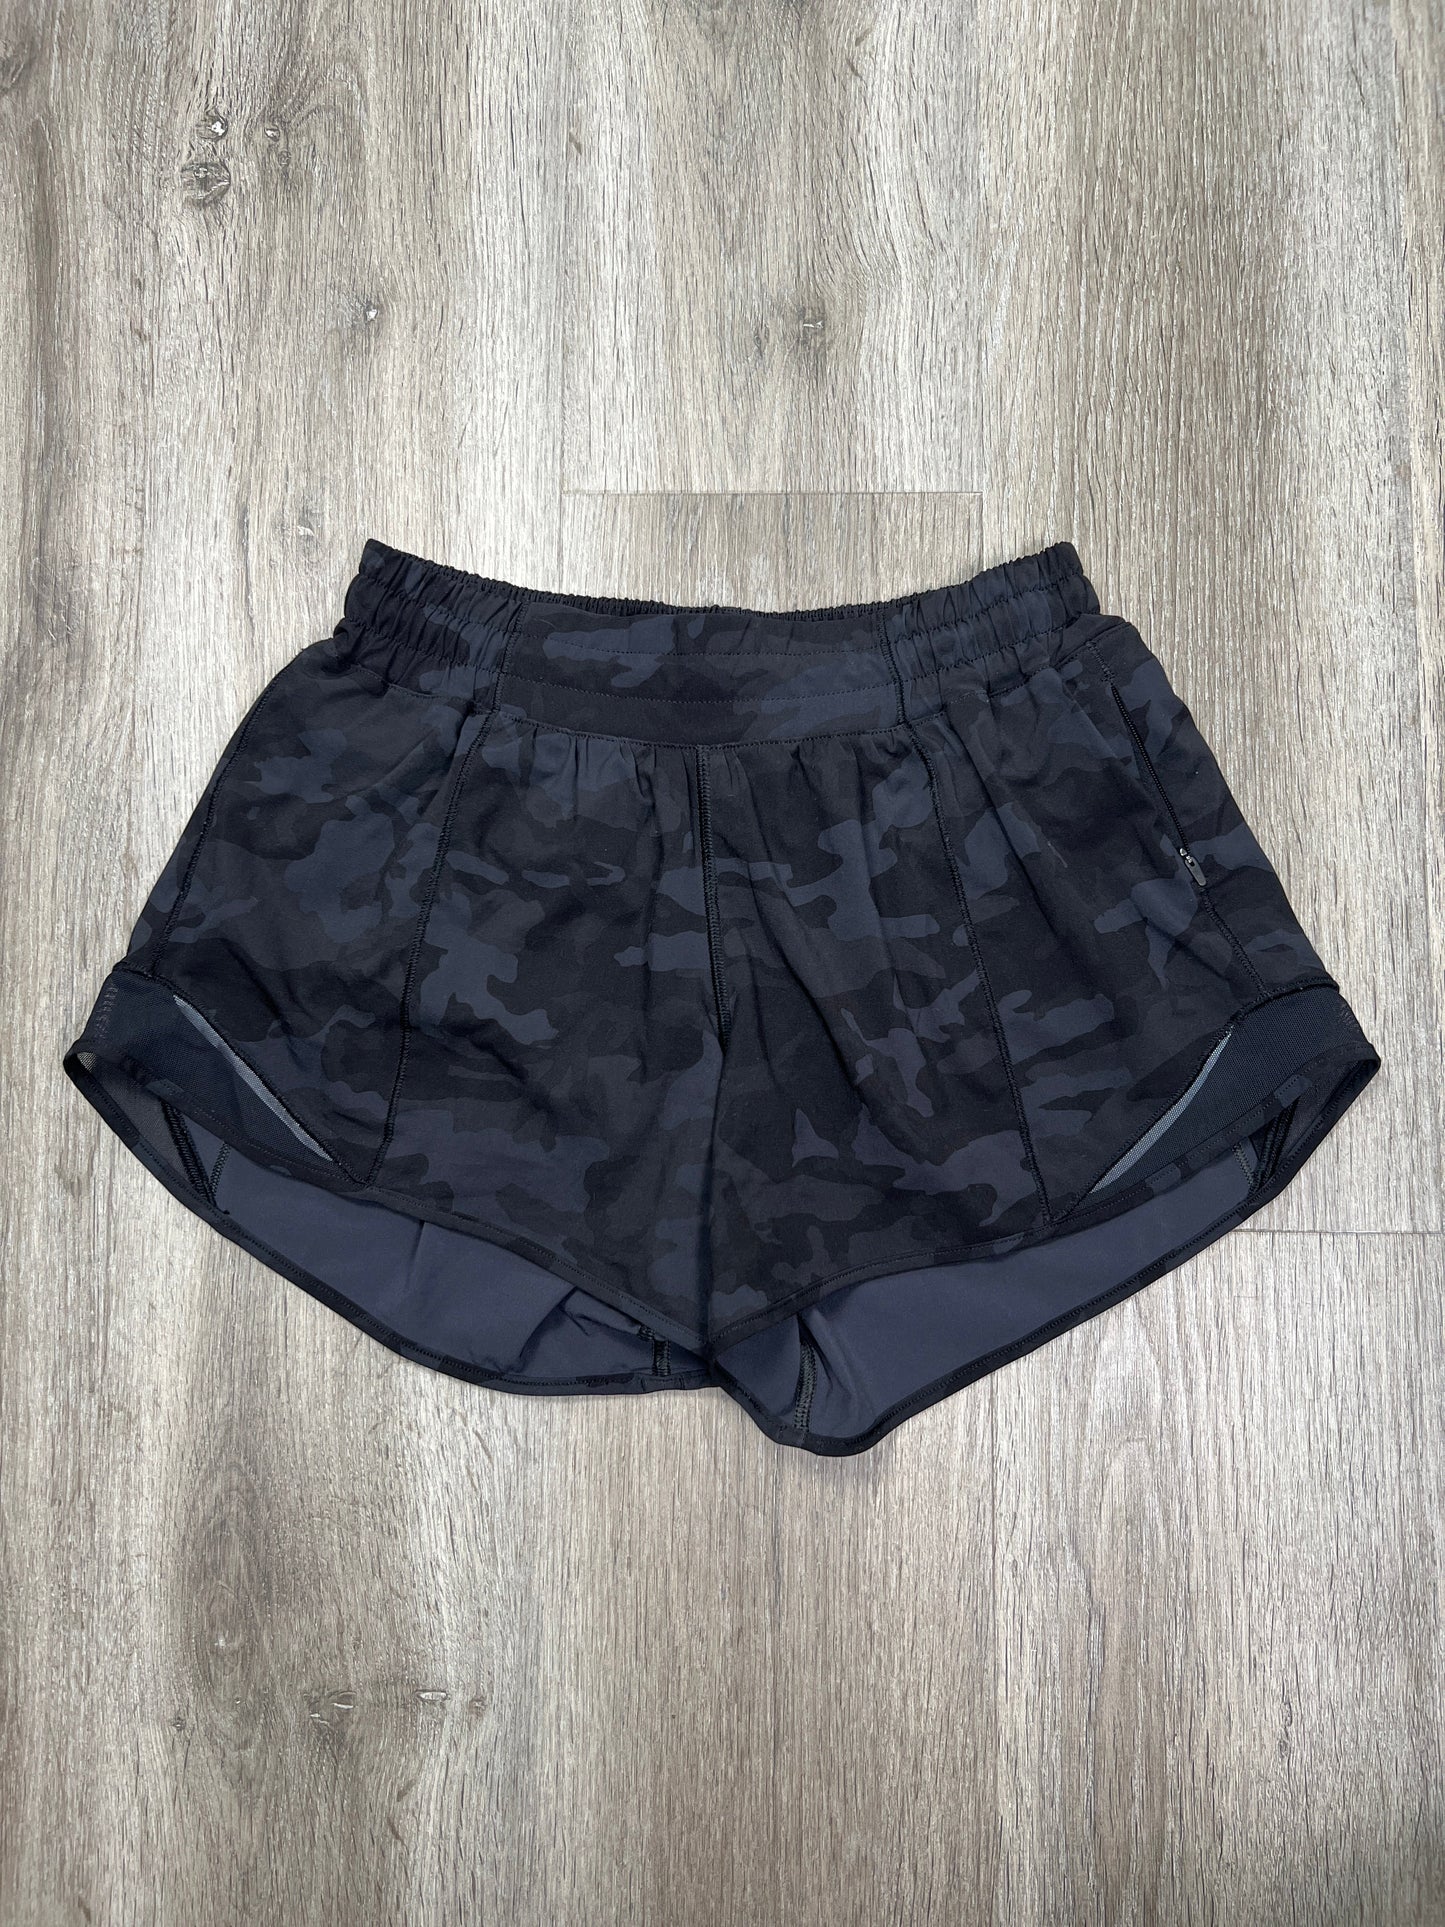 Camouflage Print Athletic Shorts Lululemon, Size S